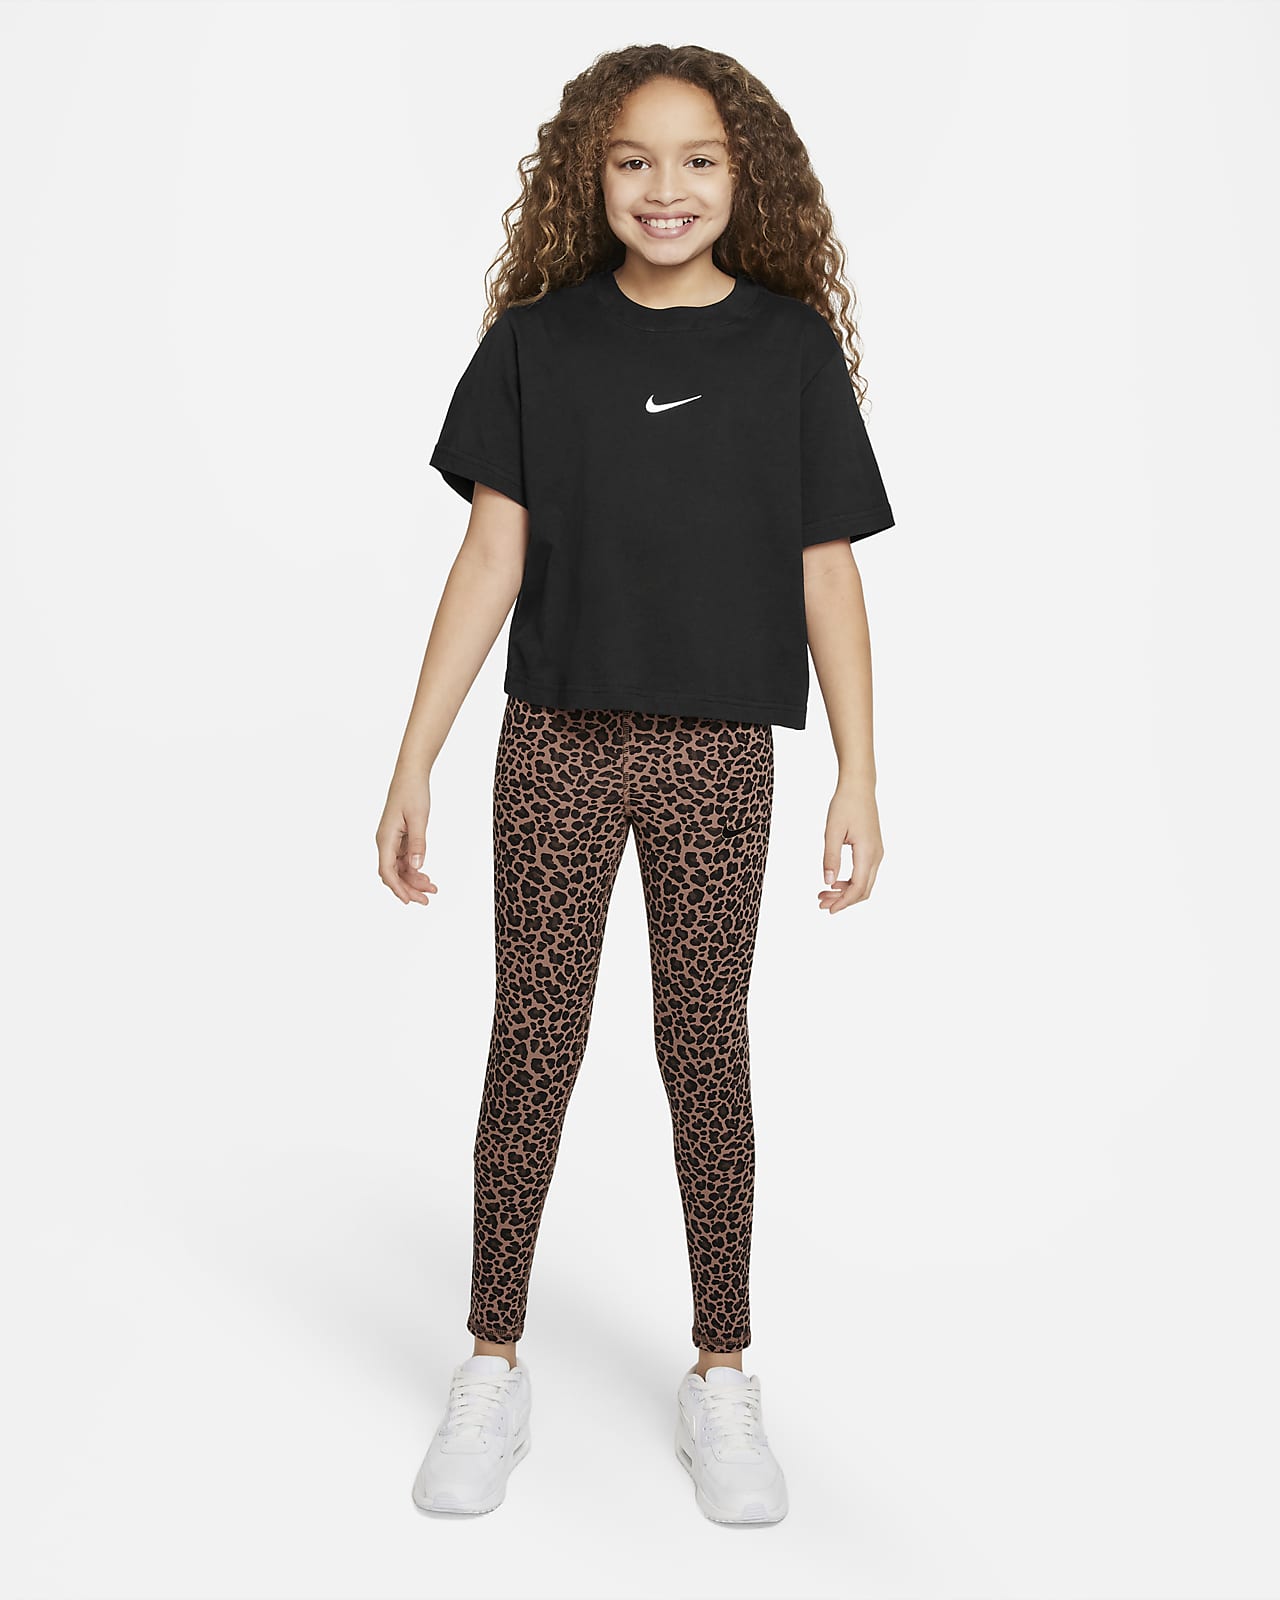 Nike Women's High-Wasted Cheetah Print Leggings